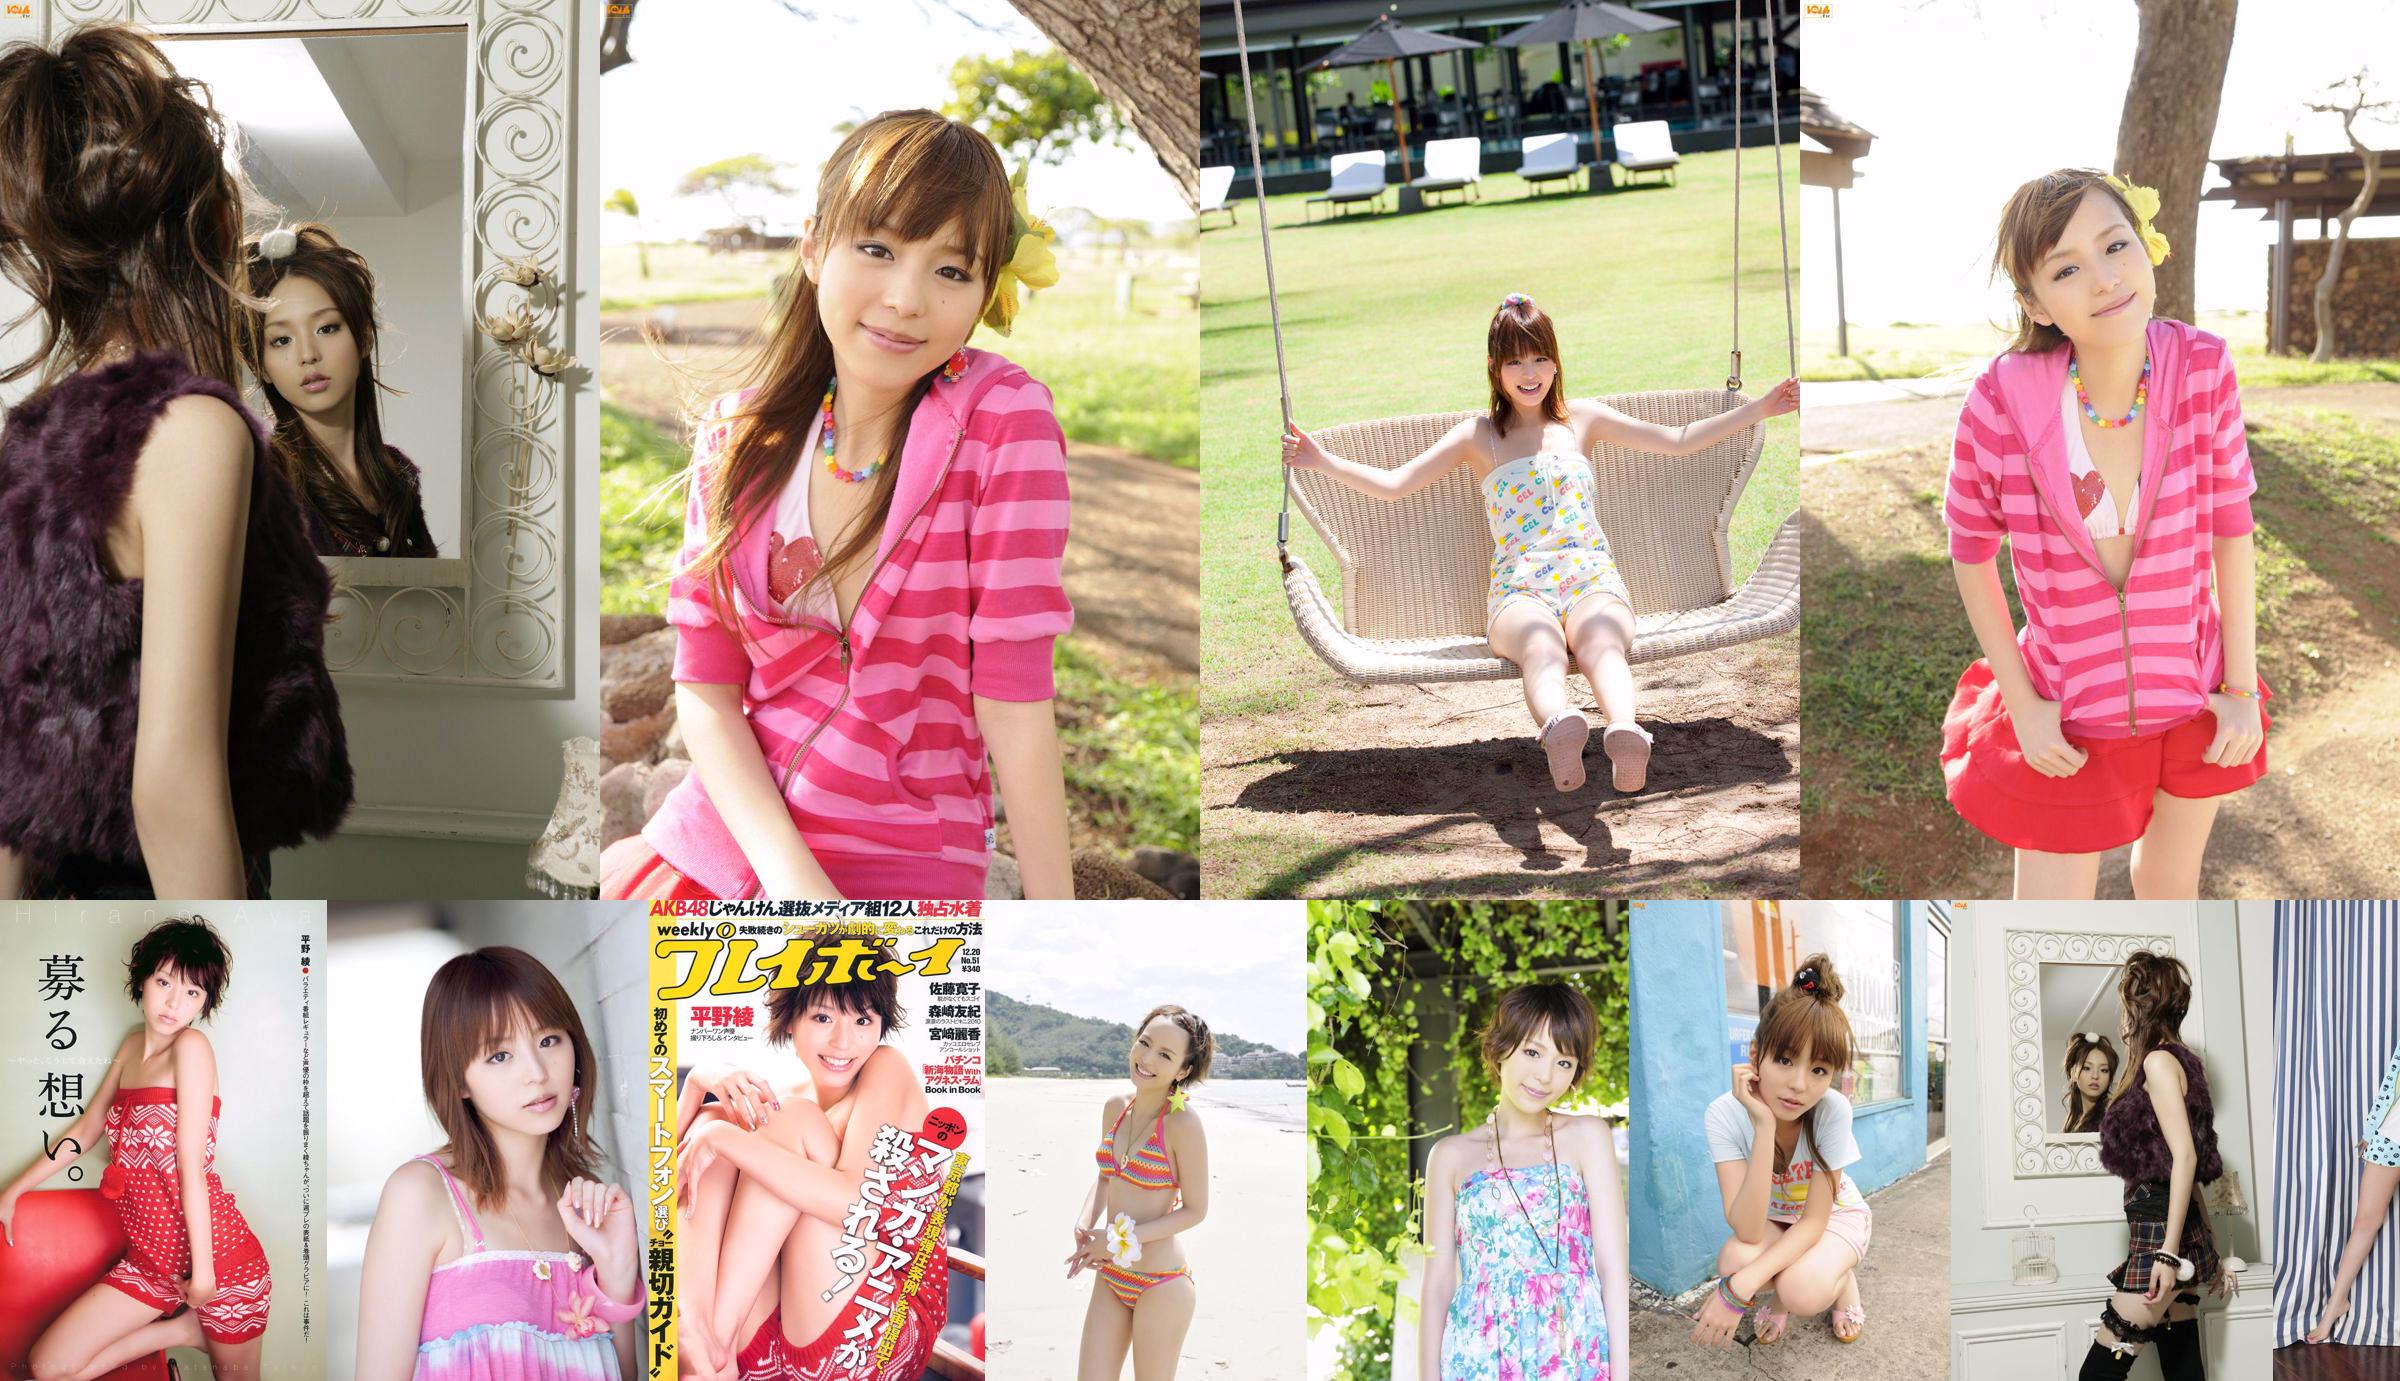 Aya Hirano AKB48 Hiroko Sato Mai Nishida Yuki Morisaki Agnes Lum [Weekly Playboy] 2010 No.51 Photo Magazine No.61de02 Pagina 2